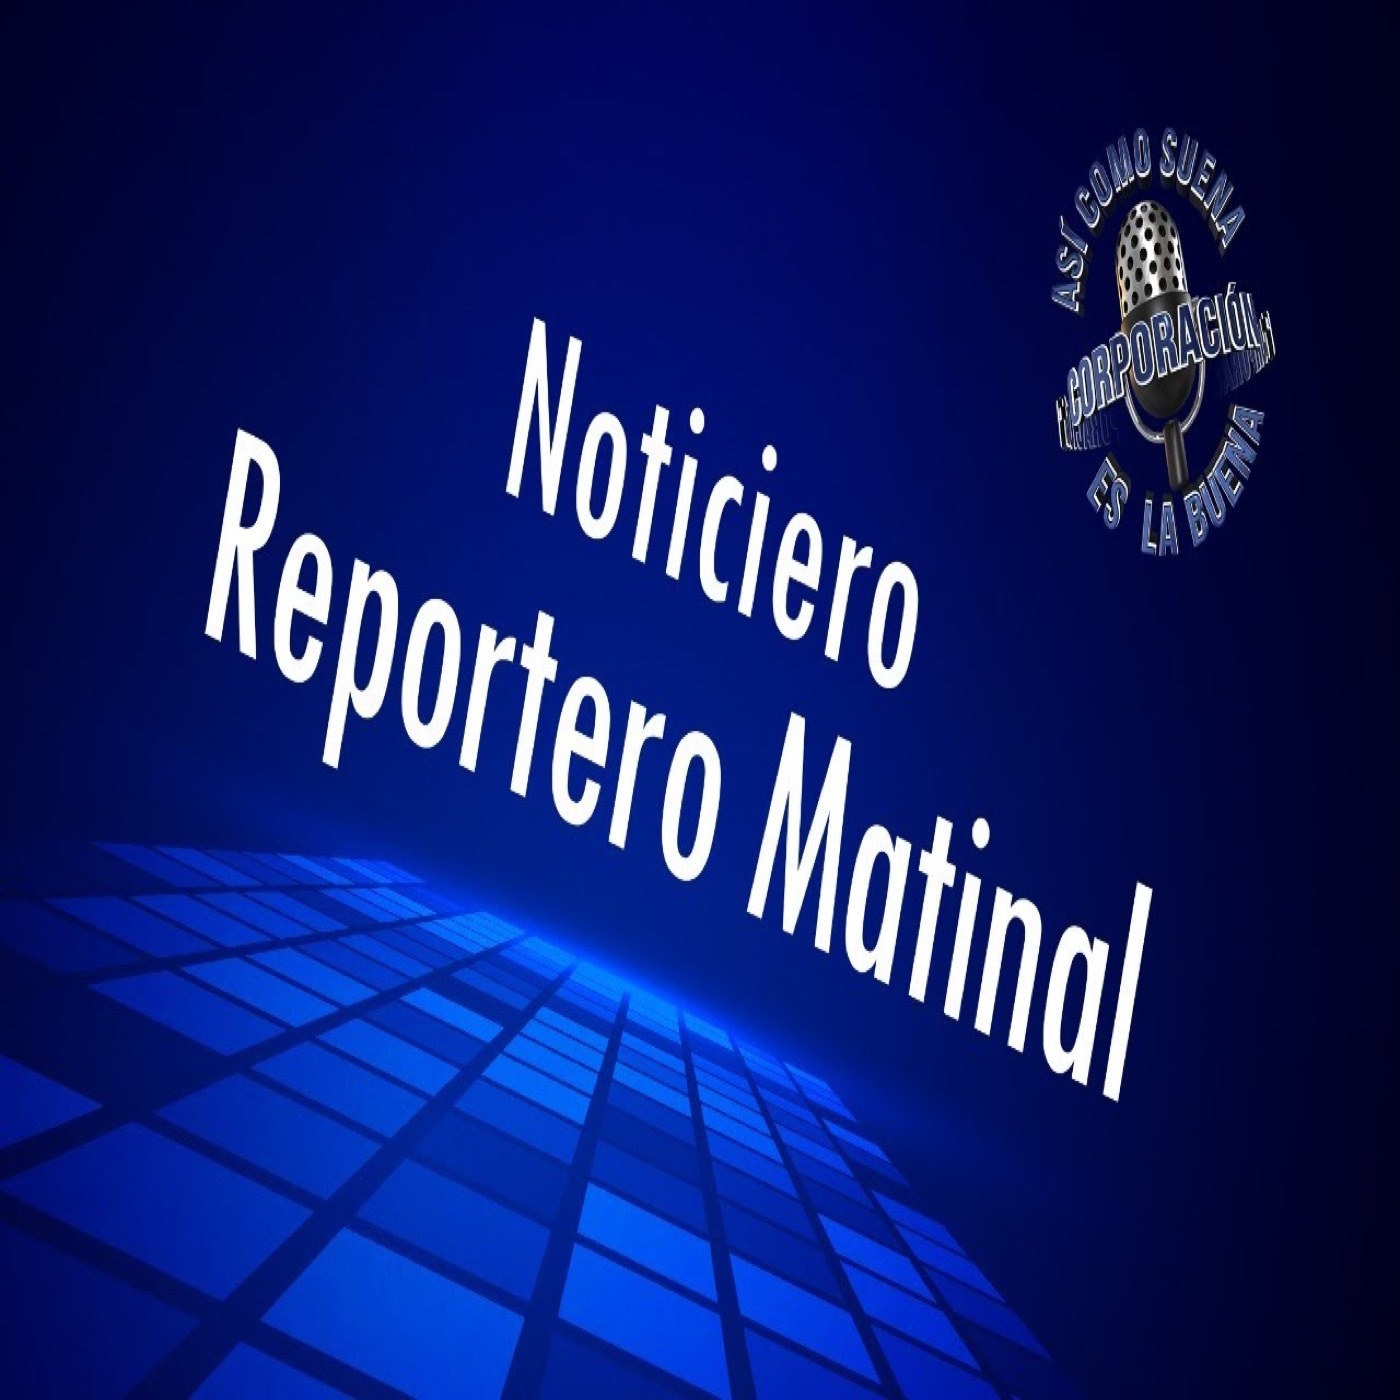 Noticiero Reportero Matinal - Friday, November 25, 2022